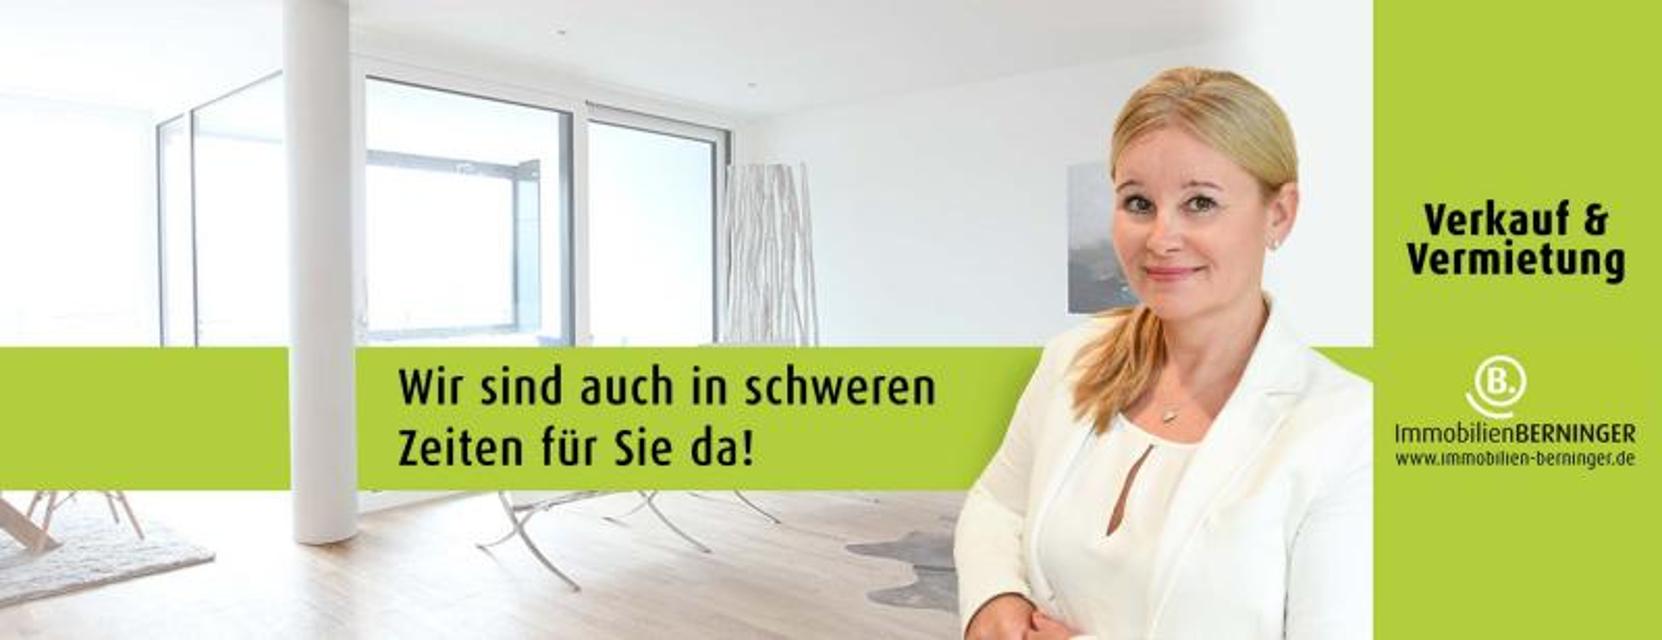 ImmobilienBERNINGER ist ein Qualitätsmakler mit Spezialisierung auf den Verkauf und die Vermietung von Wohnimmobilien und Anlageobjekten in Darmstadt und Umgebung.  Hier erhalten Sie einen und persönlichen Service.  ImmobilienBERNINGER steht auch ...